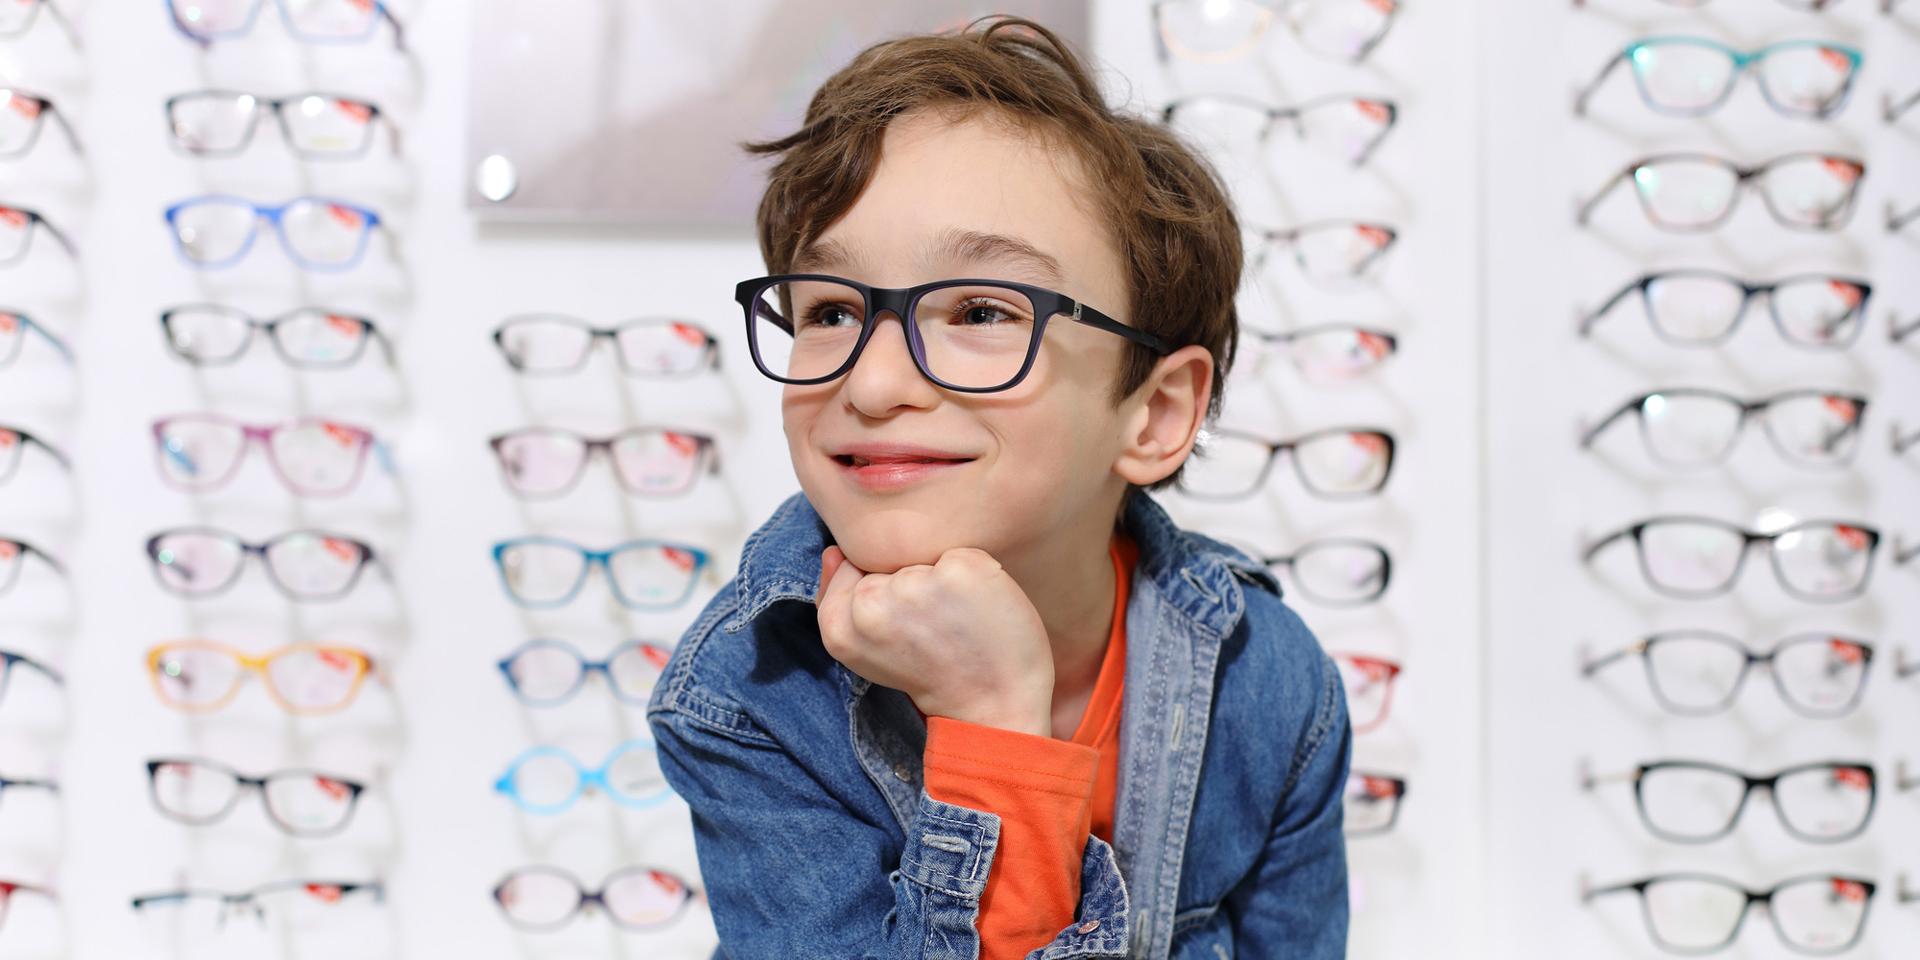 Des montures de lunettes adaptées aux enfants